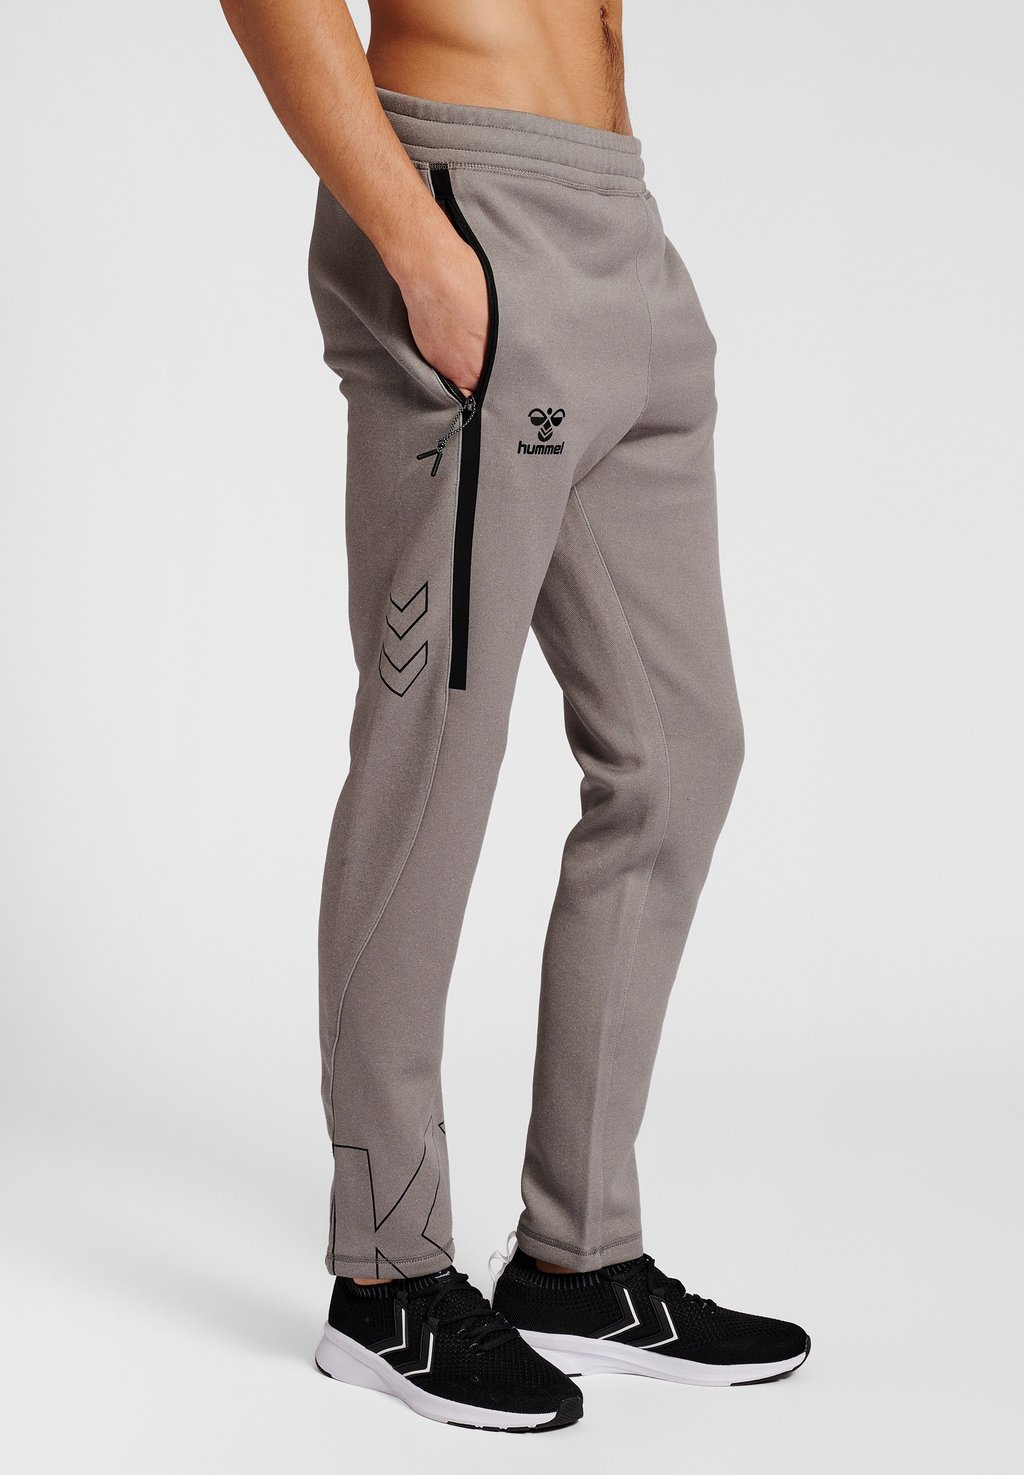 Спортивные брюки Hummel, серый меланж брюки спортивные мужские dysot серый меланж